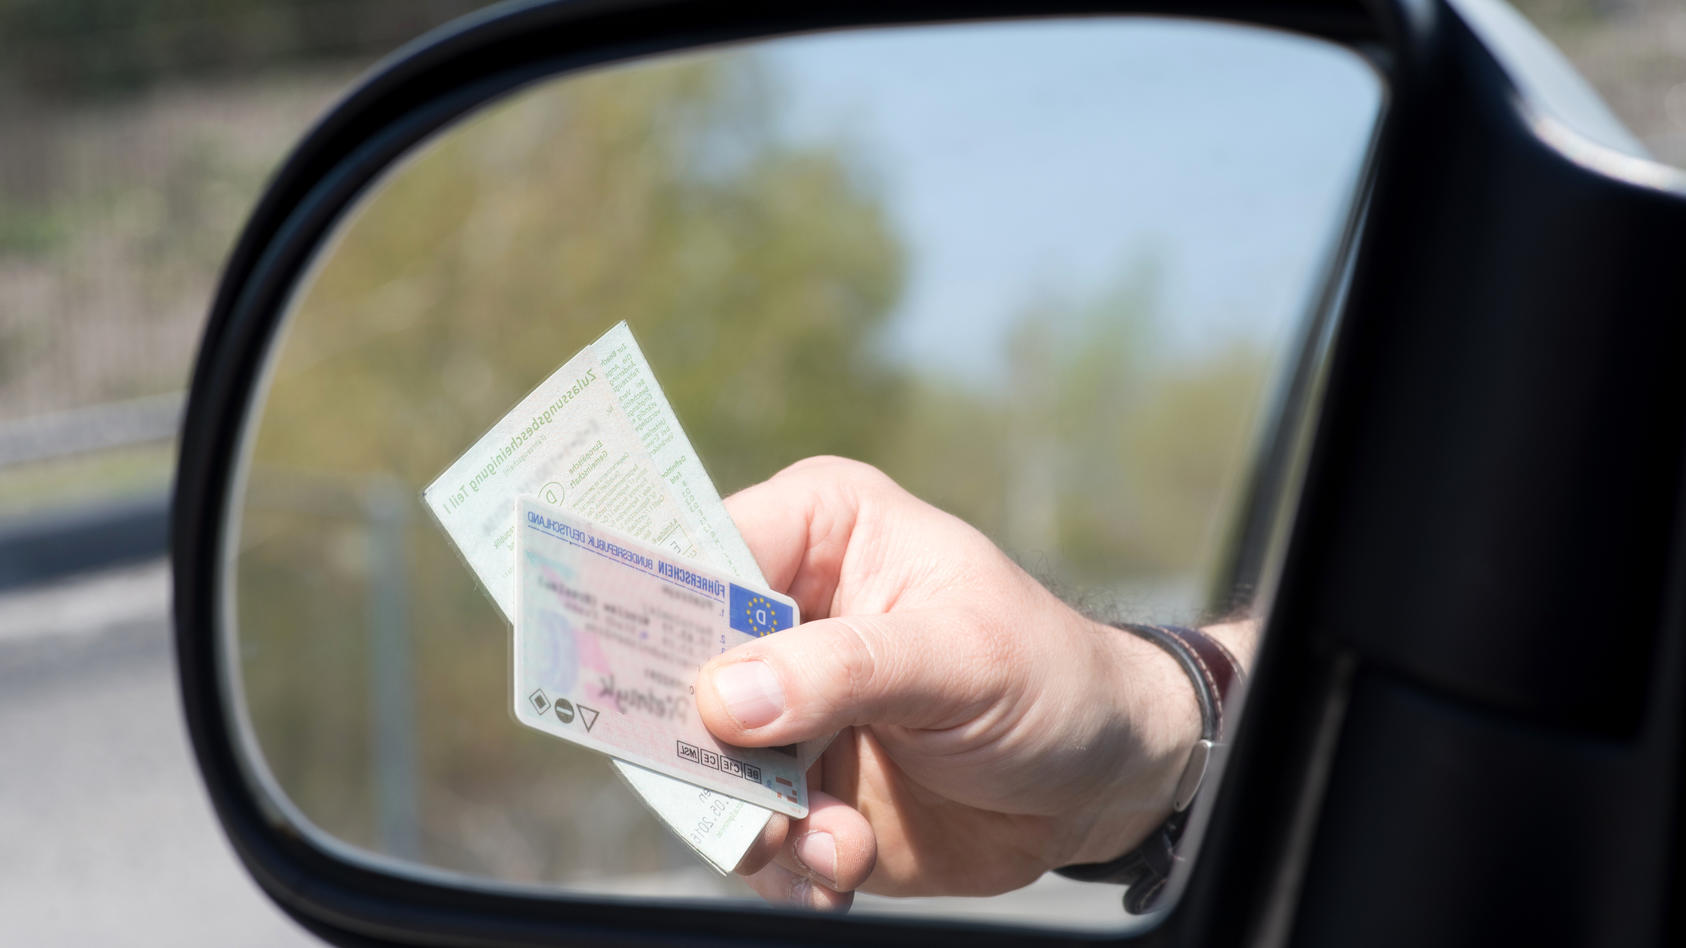 Autofahrer reicht bei Kontrolle Führerschein und Fahrzeugpapiere aus dem Autofenster.